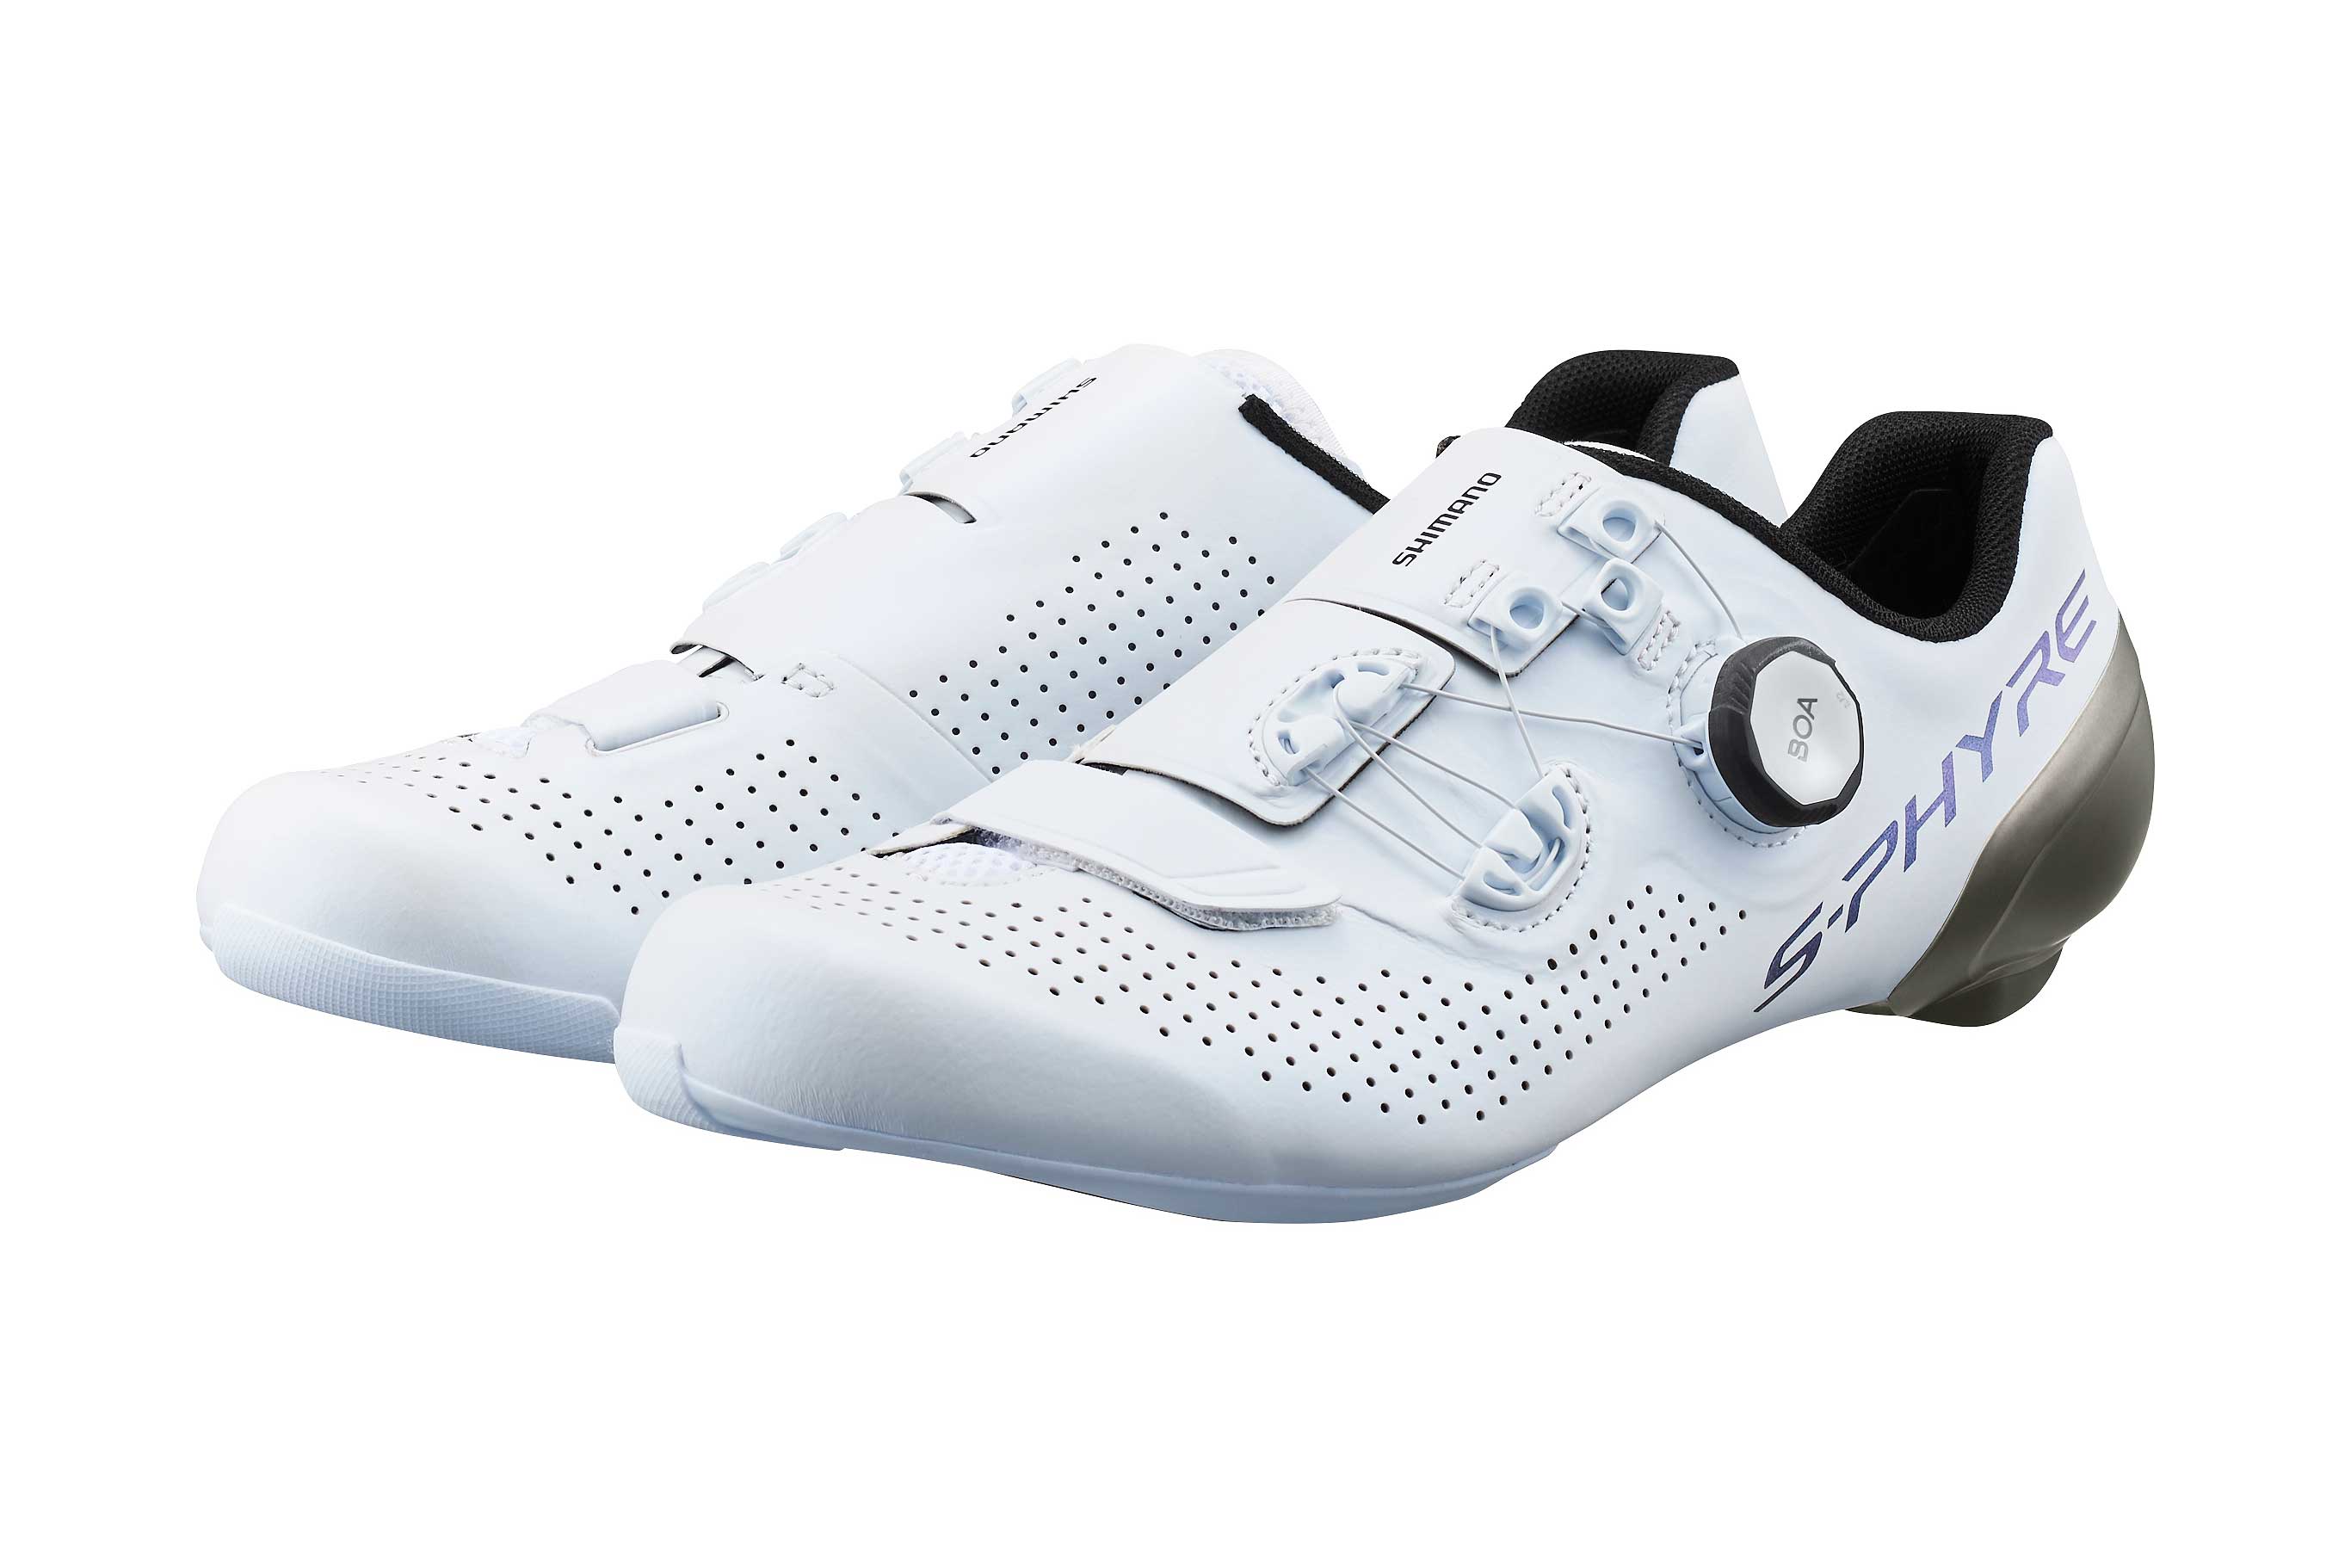 Shimano presenta sus modelos de zapatillas orientados al rendimiento